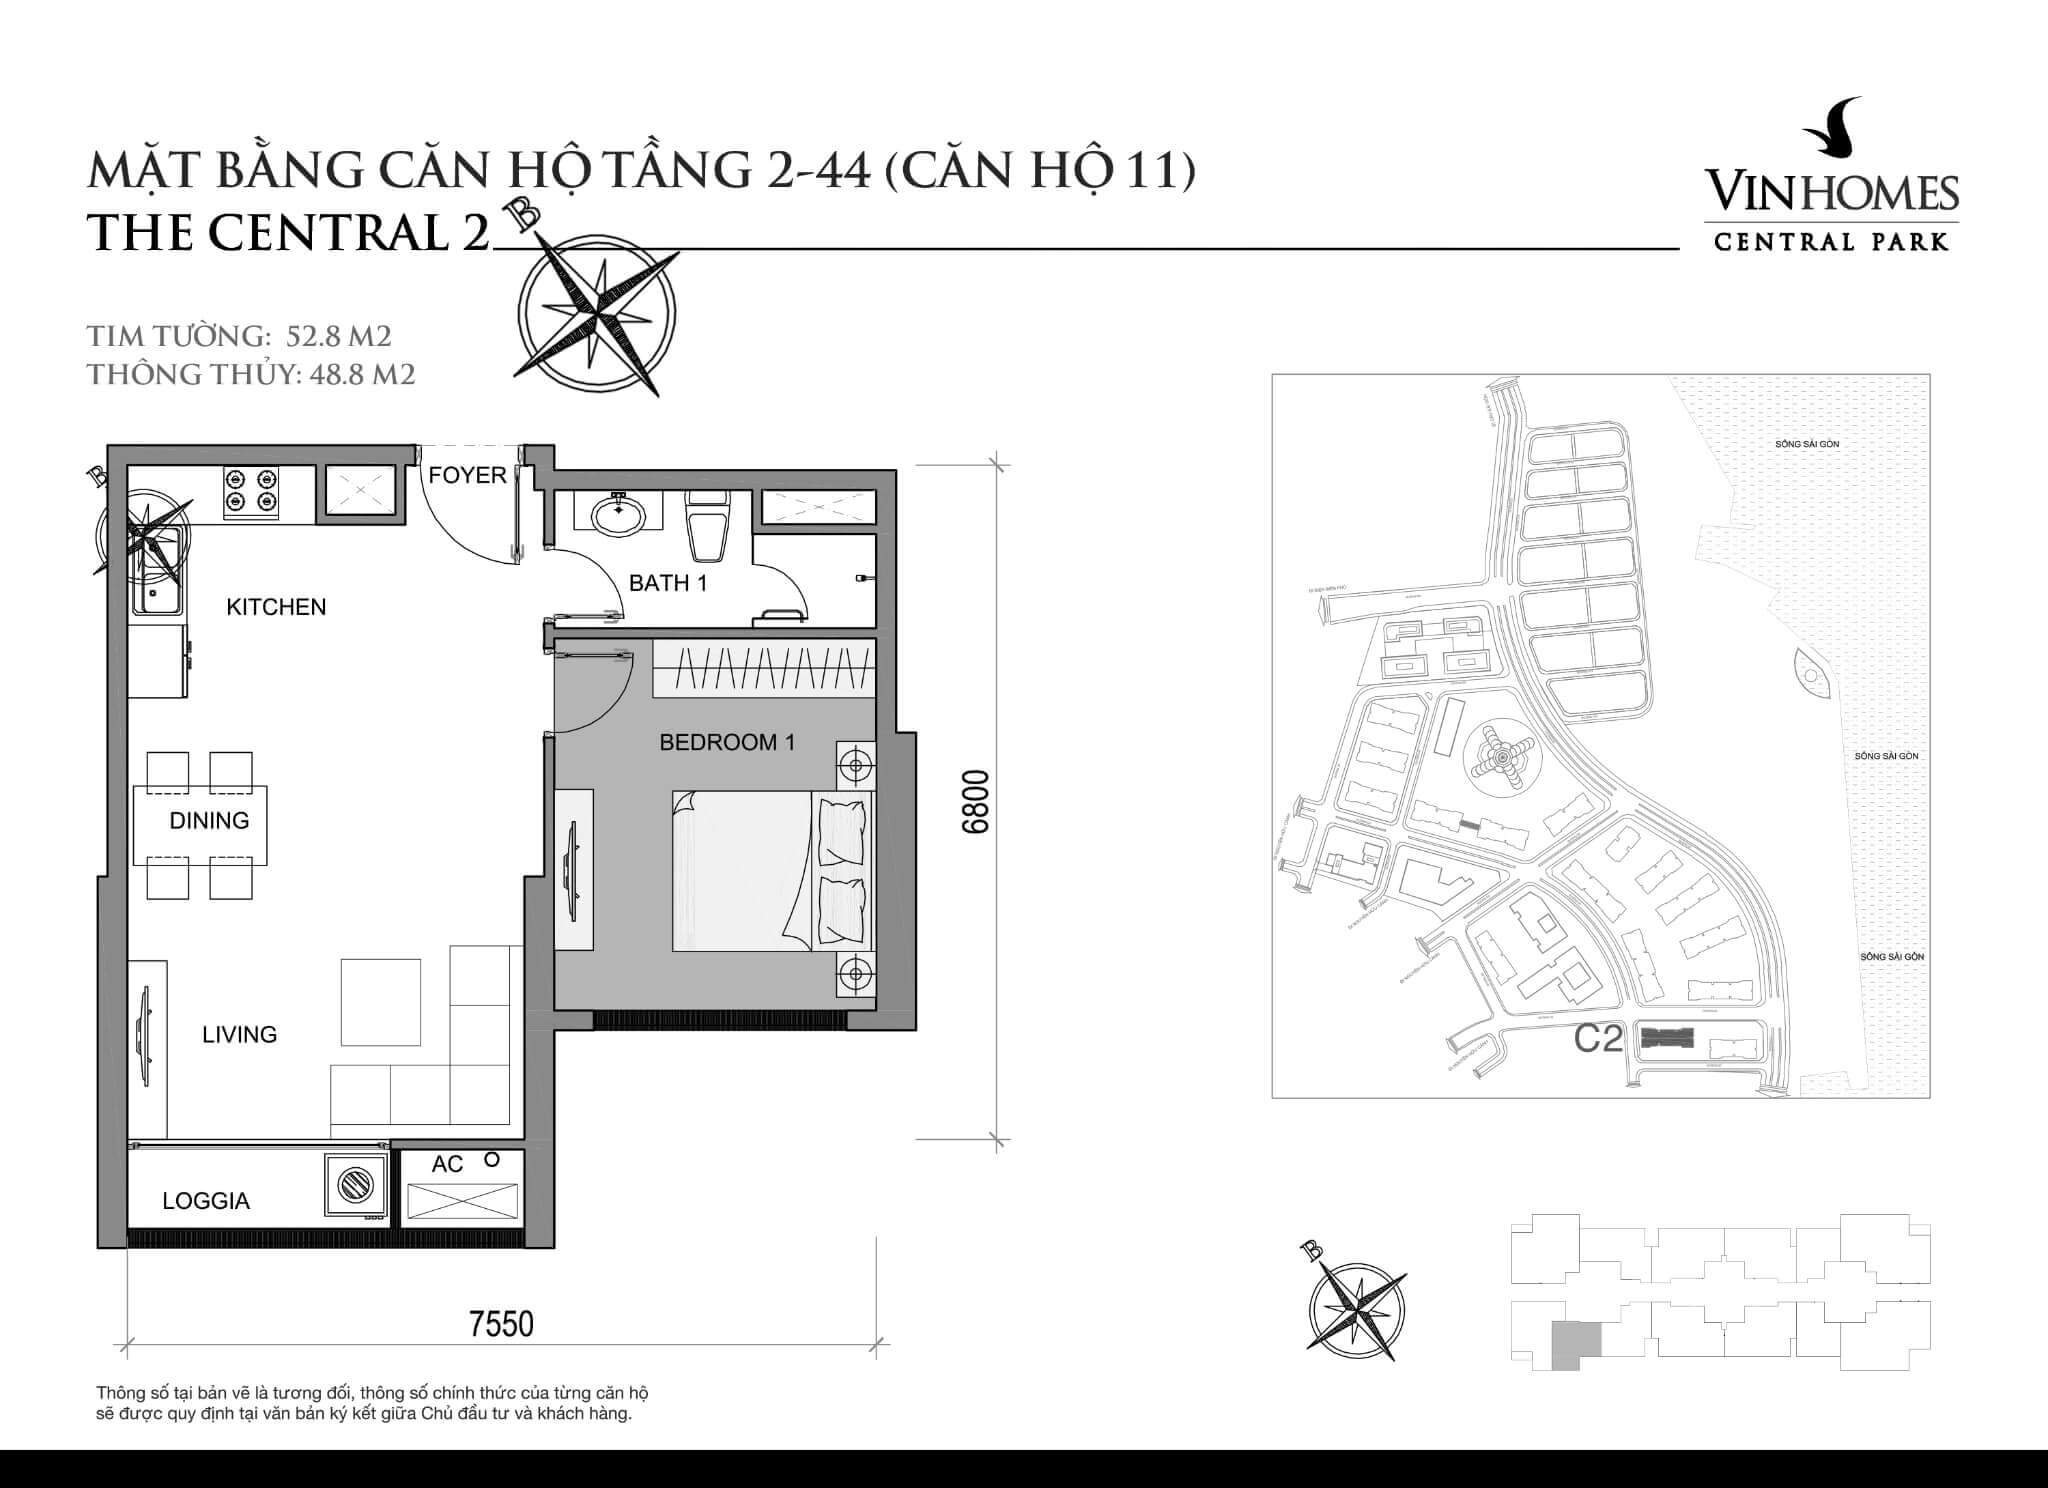 layout căn hộ số 11 tầng 2-44 Central 2